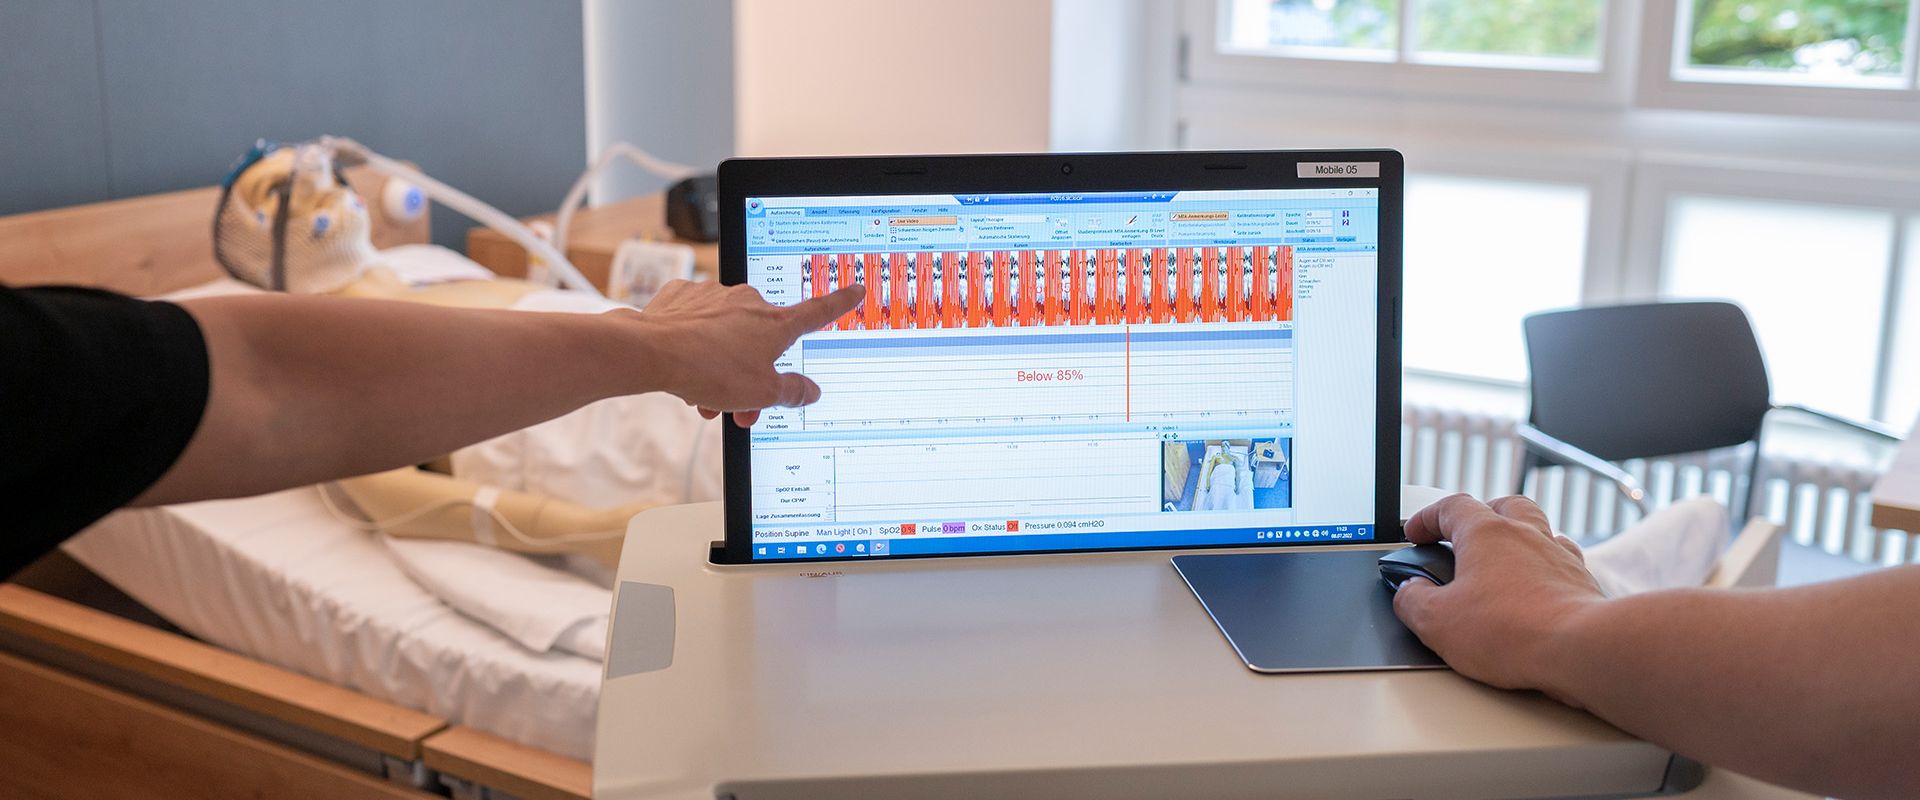 Bildschirm mit Messwerten an einem Patientenbett